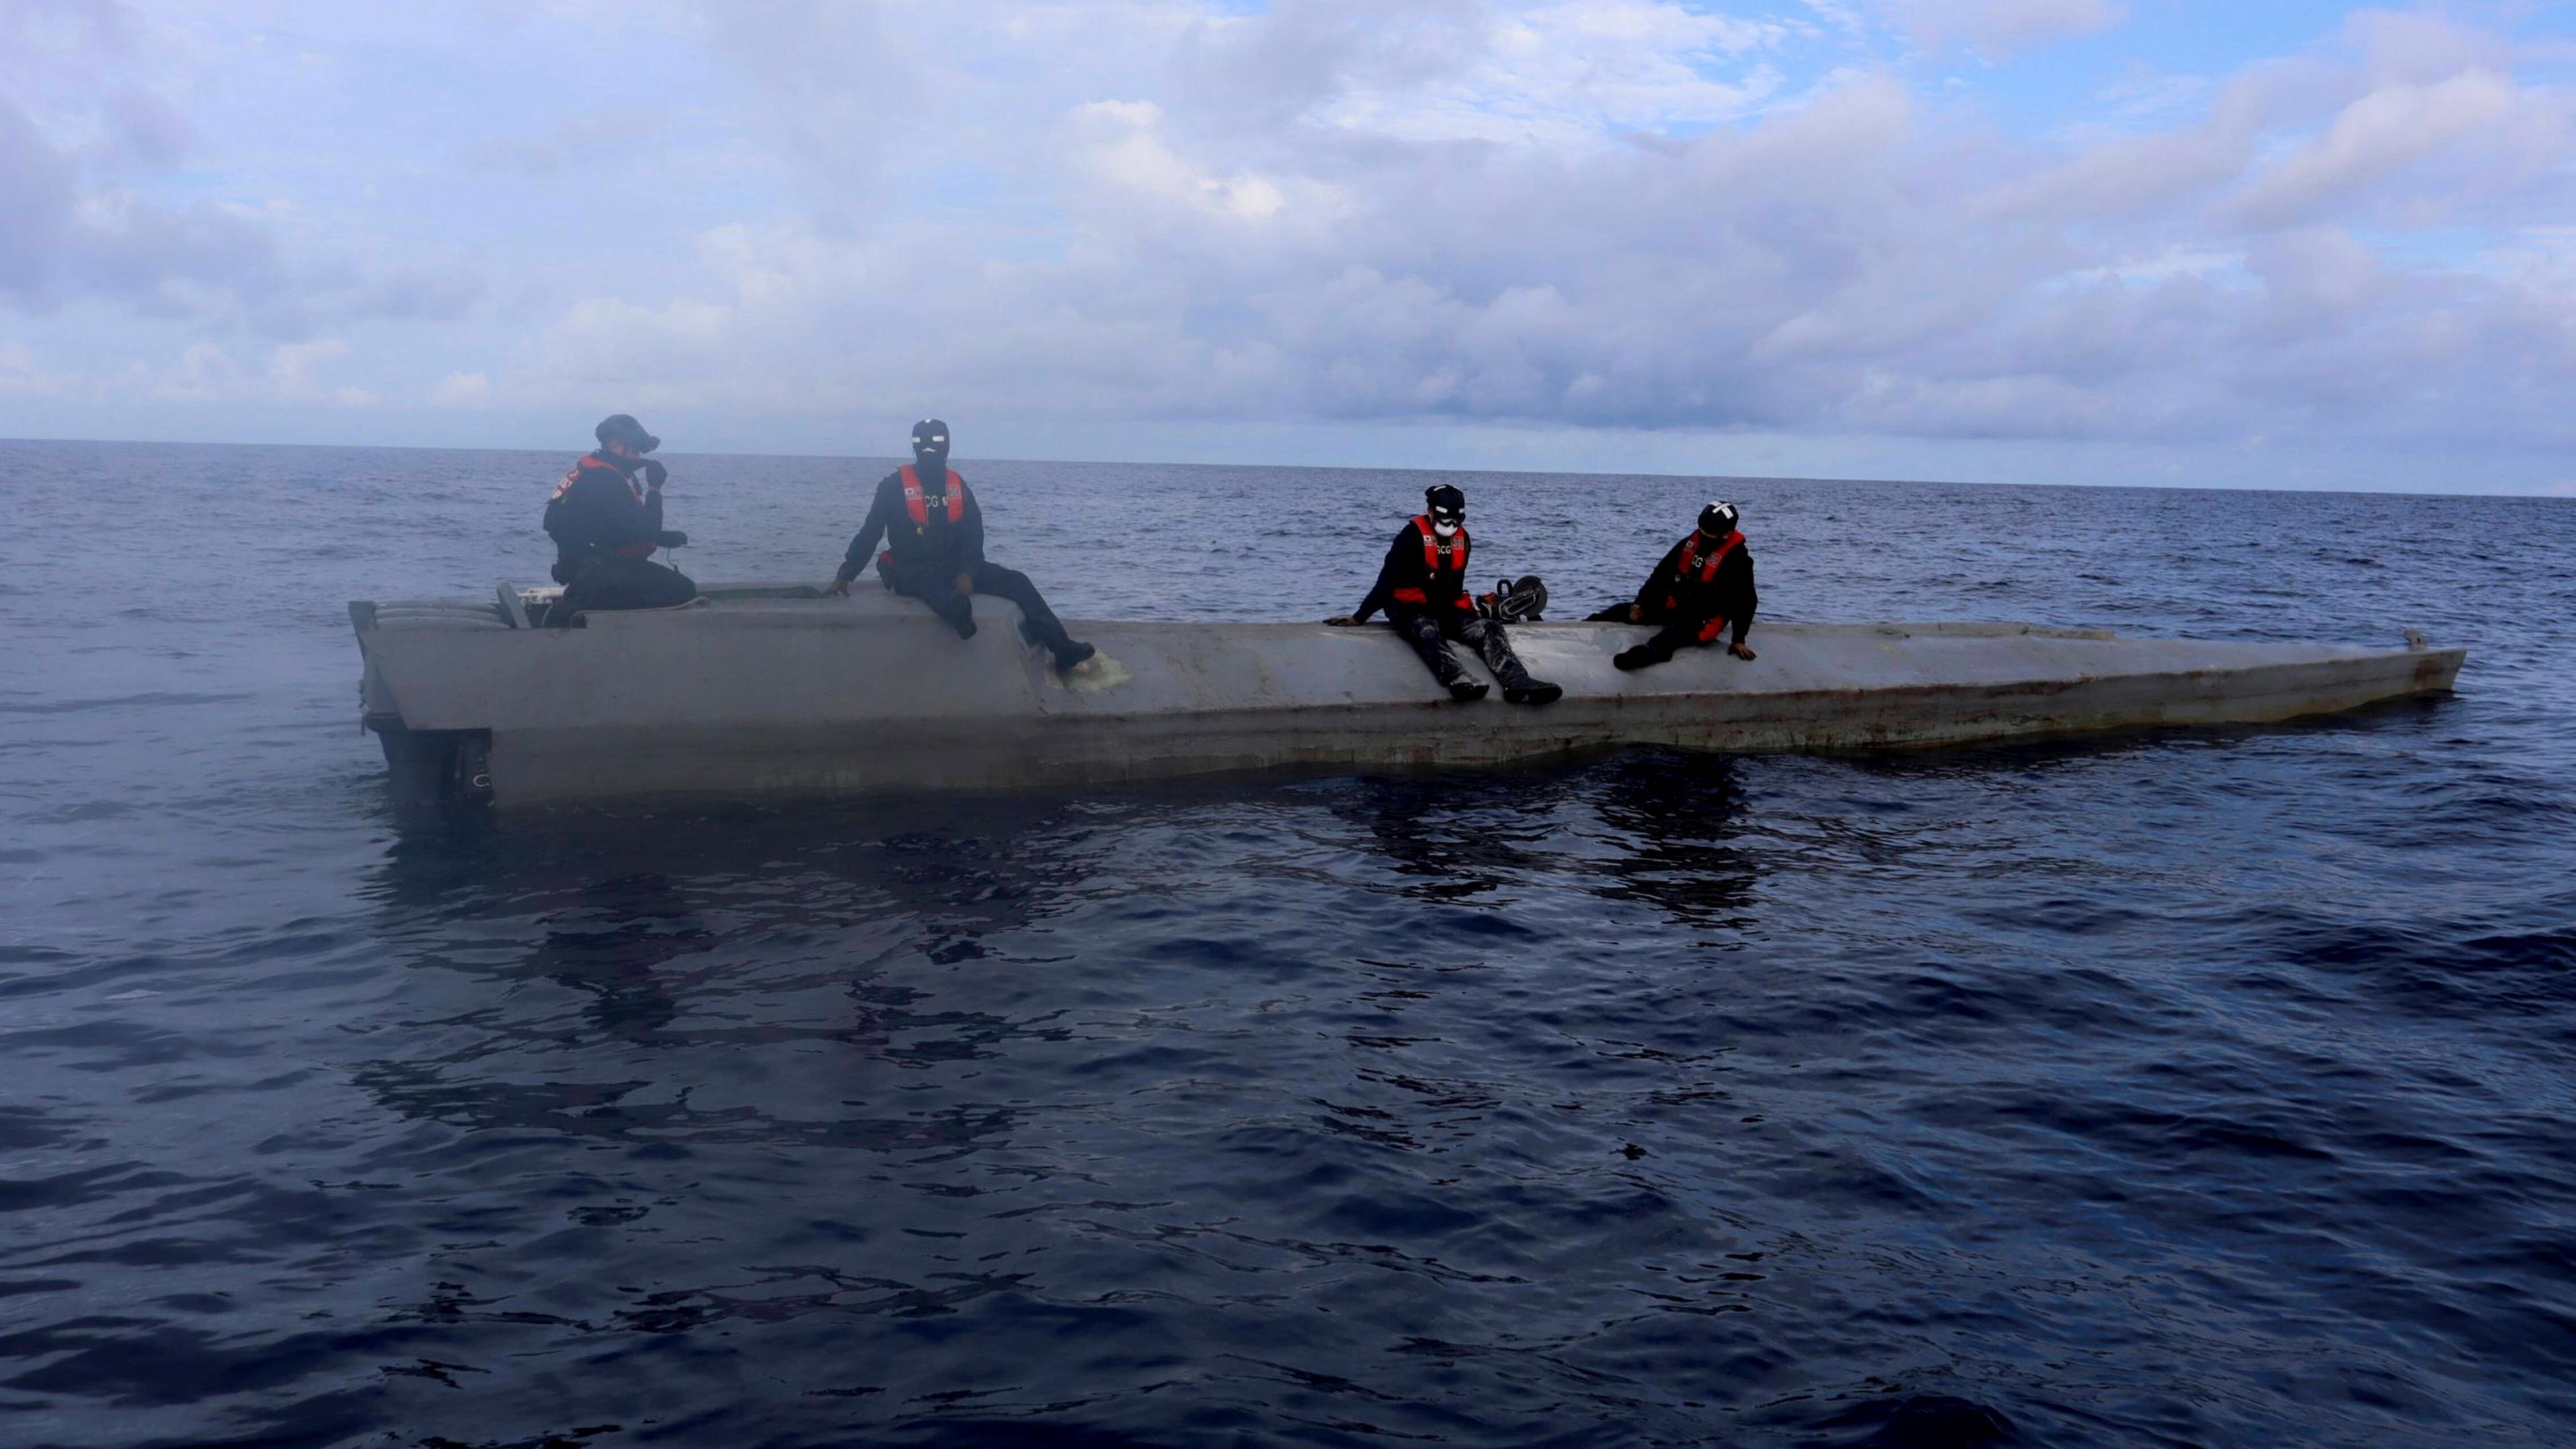 Bordbesatzung der Küstenwache sitzt auf einem flachen U-Boot-ähnlichen Schiff, das von Drogenschmugglern genutzt wird